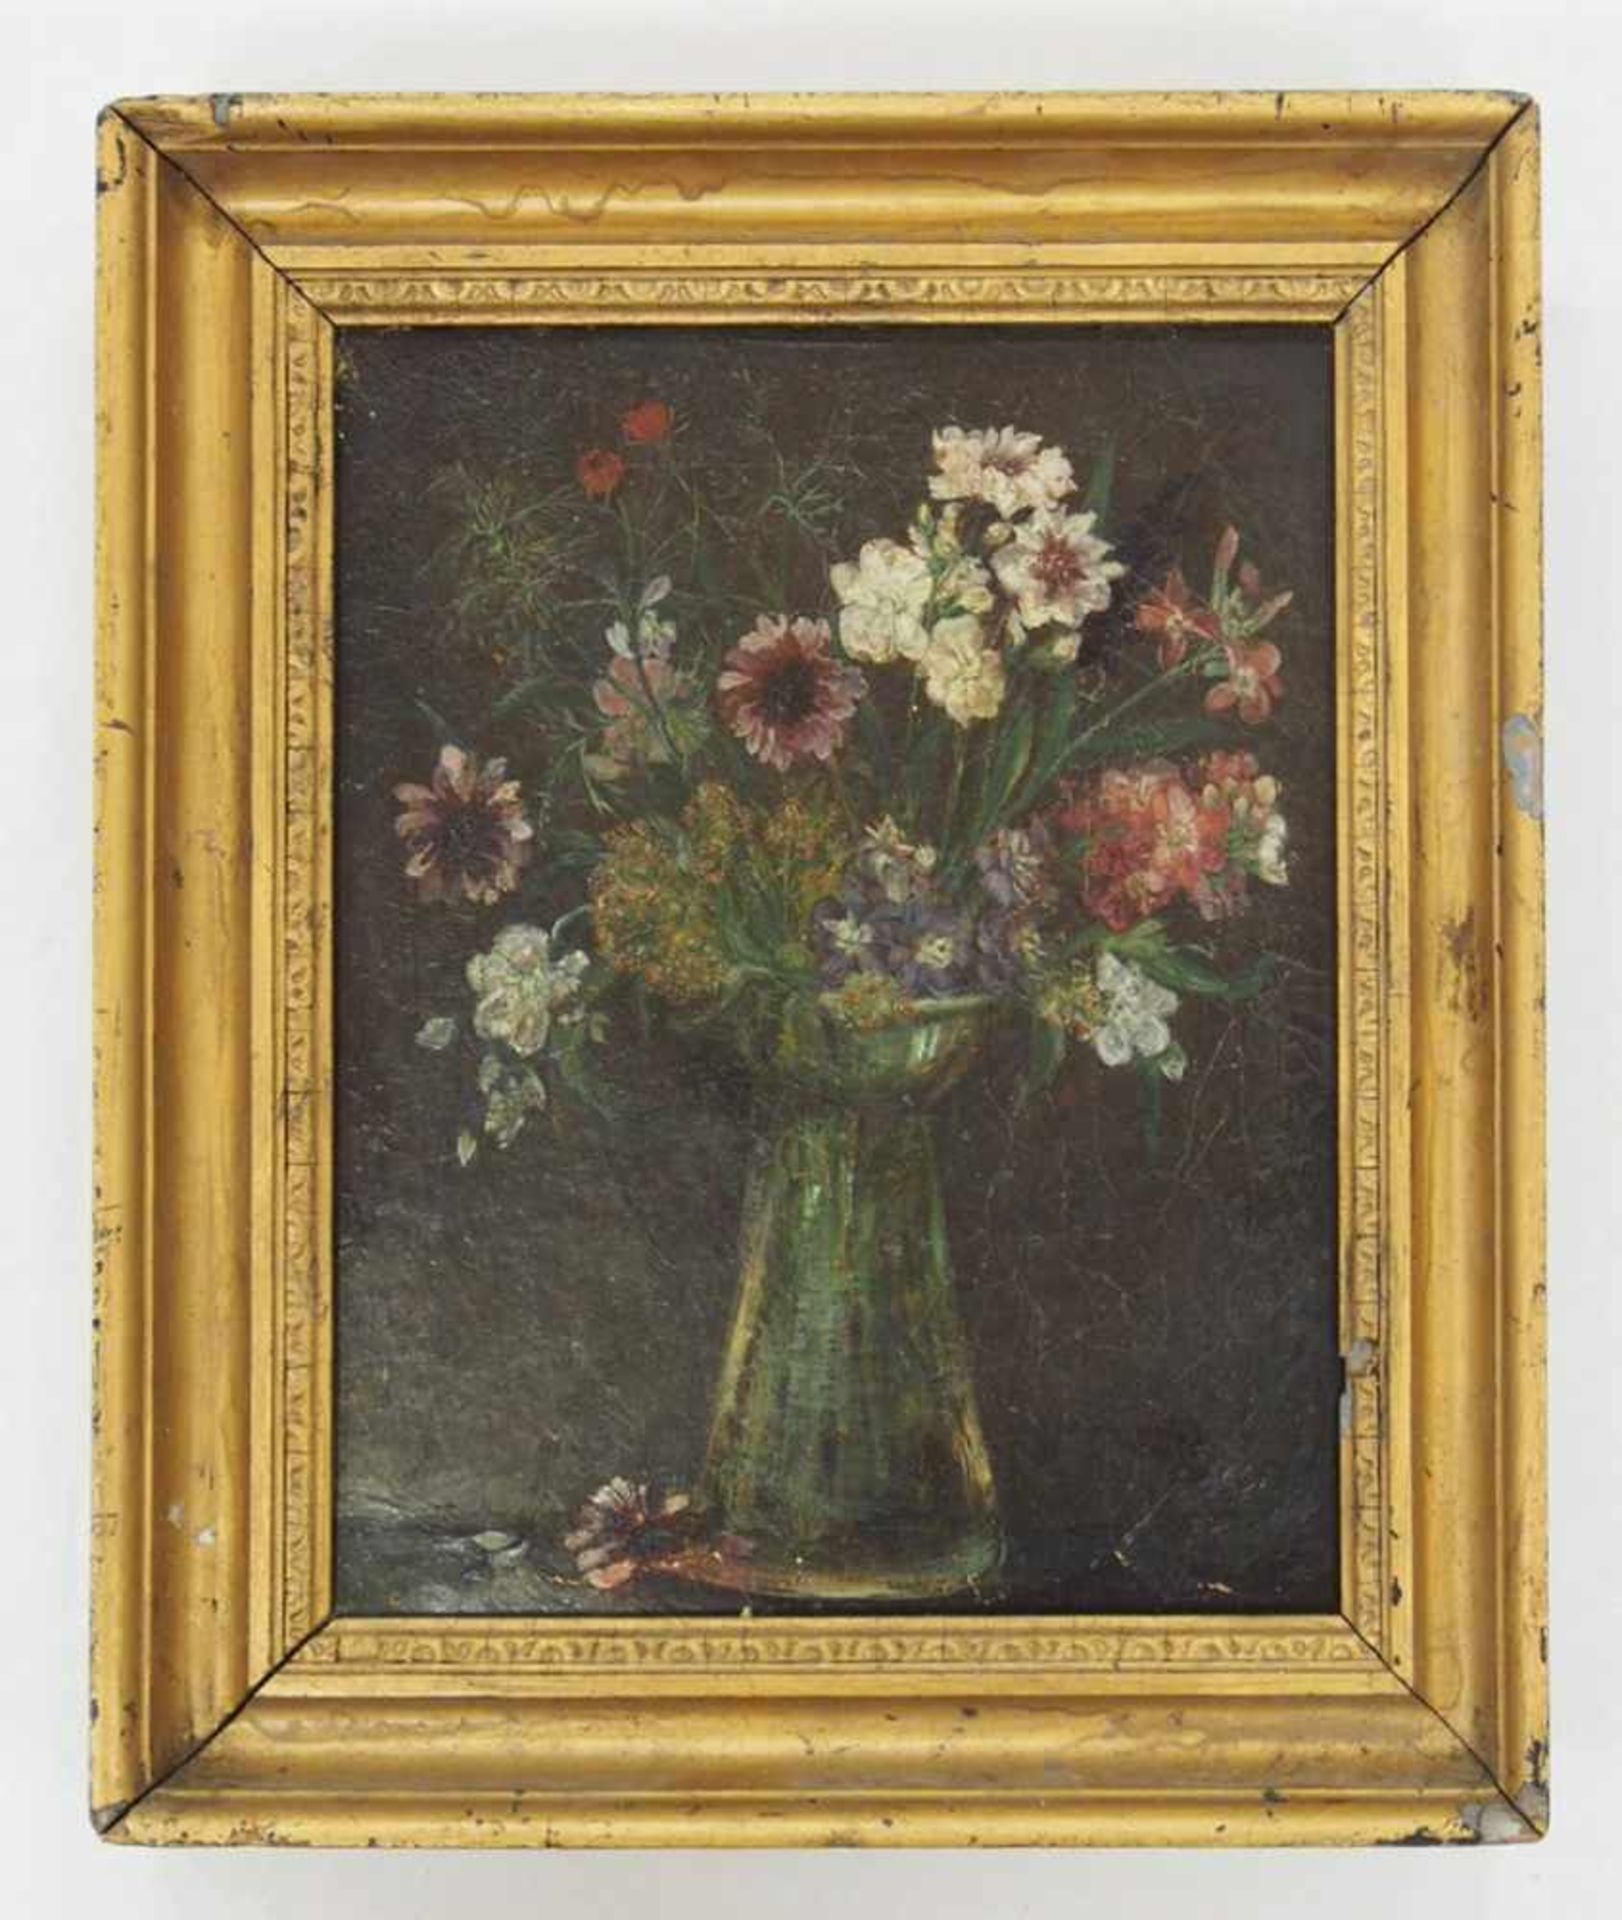 DEUTSCHER MEISTER19. Jh.BlumenstillebenÖl auf Leinwand, 27 x 23 cm, Rahmen- - -25.00 % buyer's